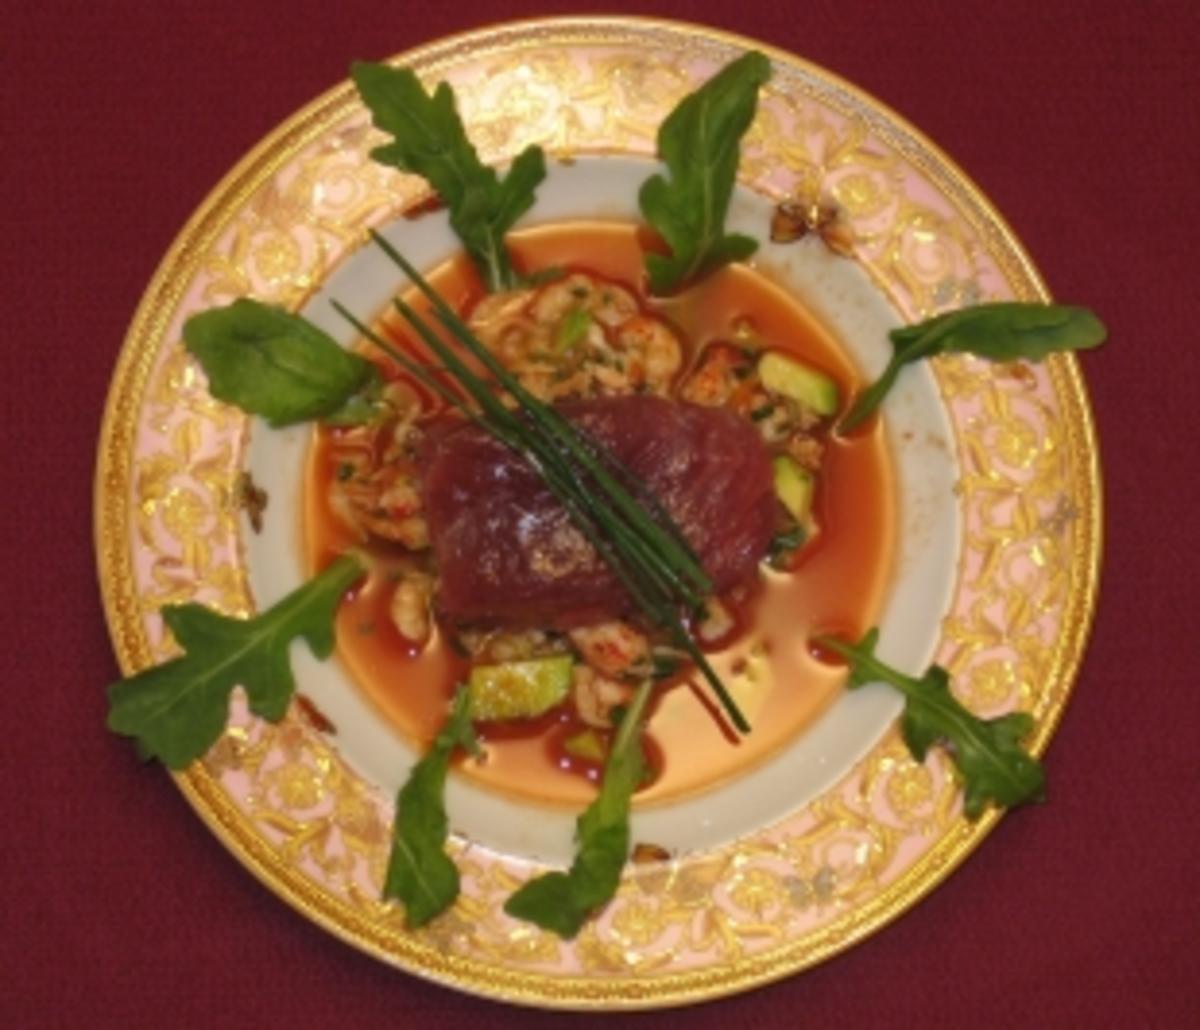 Krebssalat mit eingelegtem Tunfisch, Tomaten und Avocado - Rezept